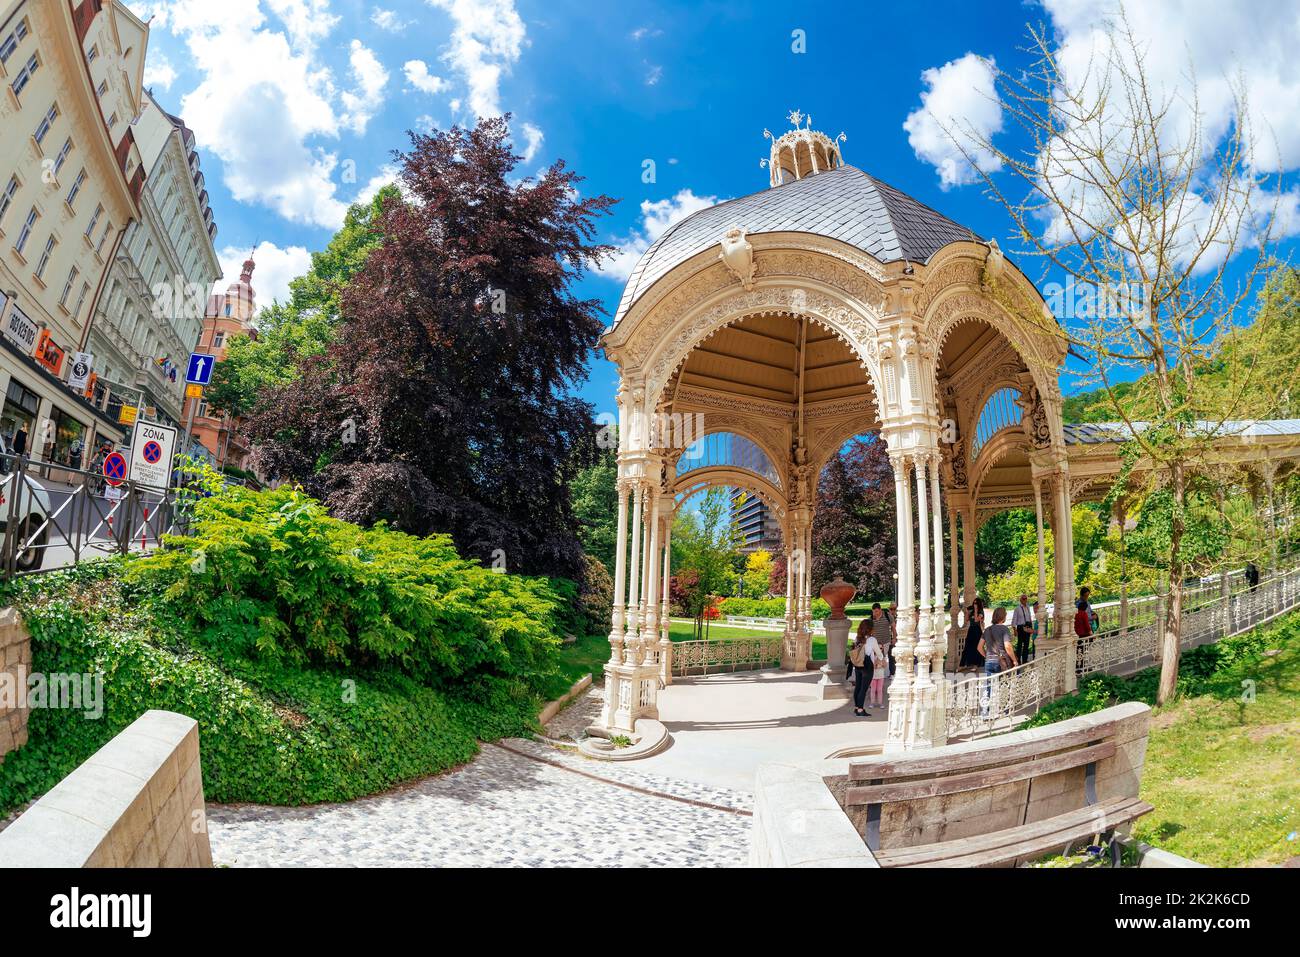 Karlovy Vary, Repubblica Ceca - 26 maggio 2017: Sadova Kolonada - Garden Colonnade - passeggiata coperta dalla sorgente di acqua minerale Foto Stock